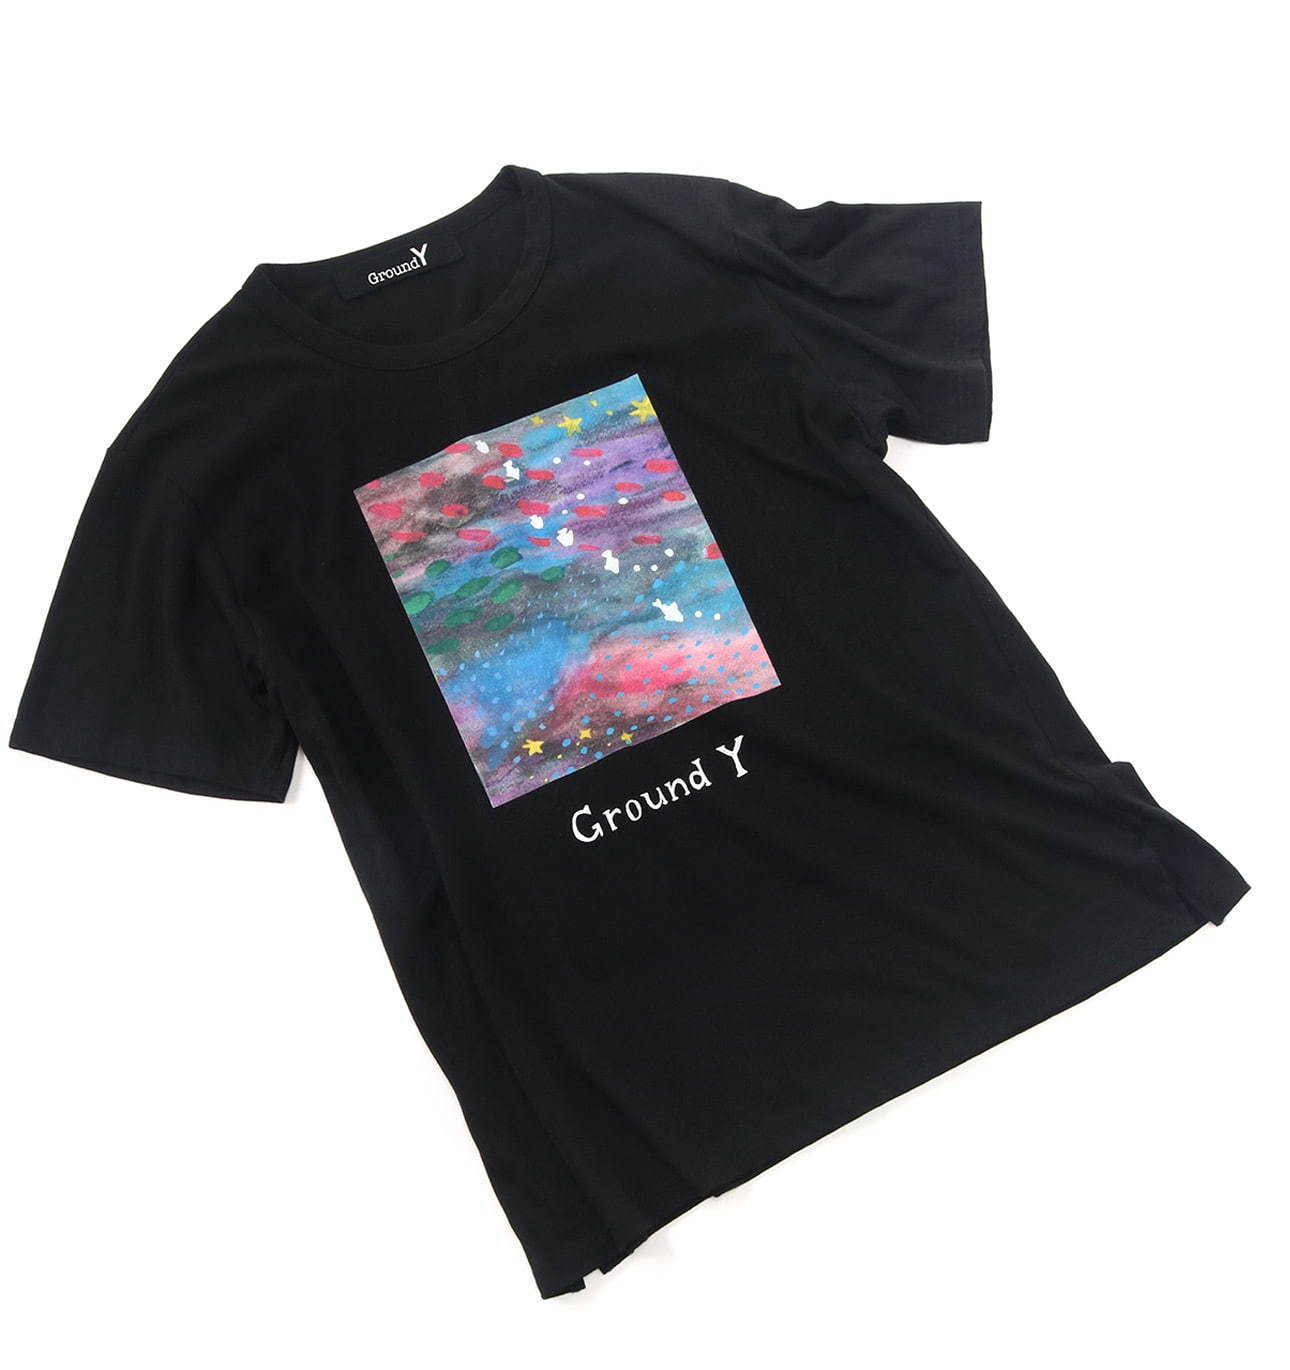 Ground Y“夢の中”などのイラストを施したTシャツ、深川麻衣の描き 